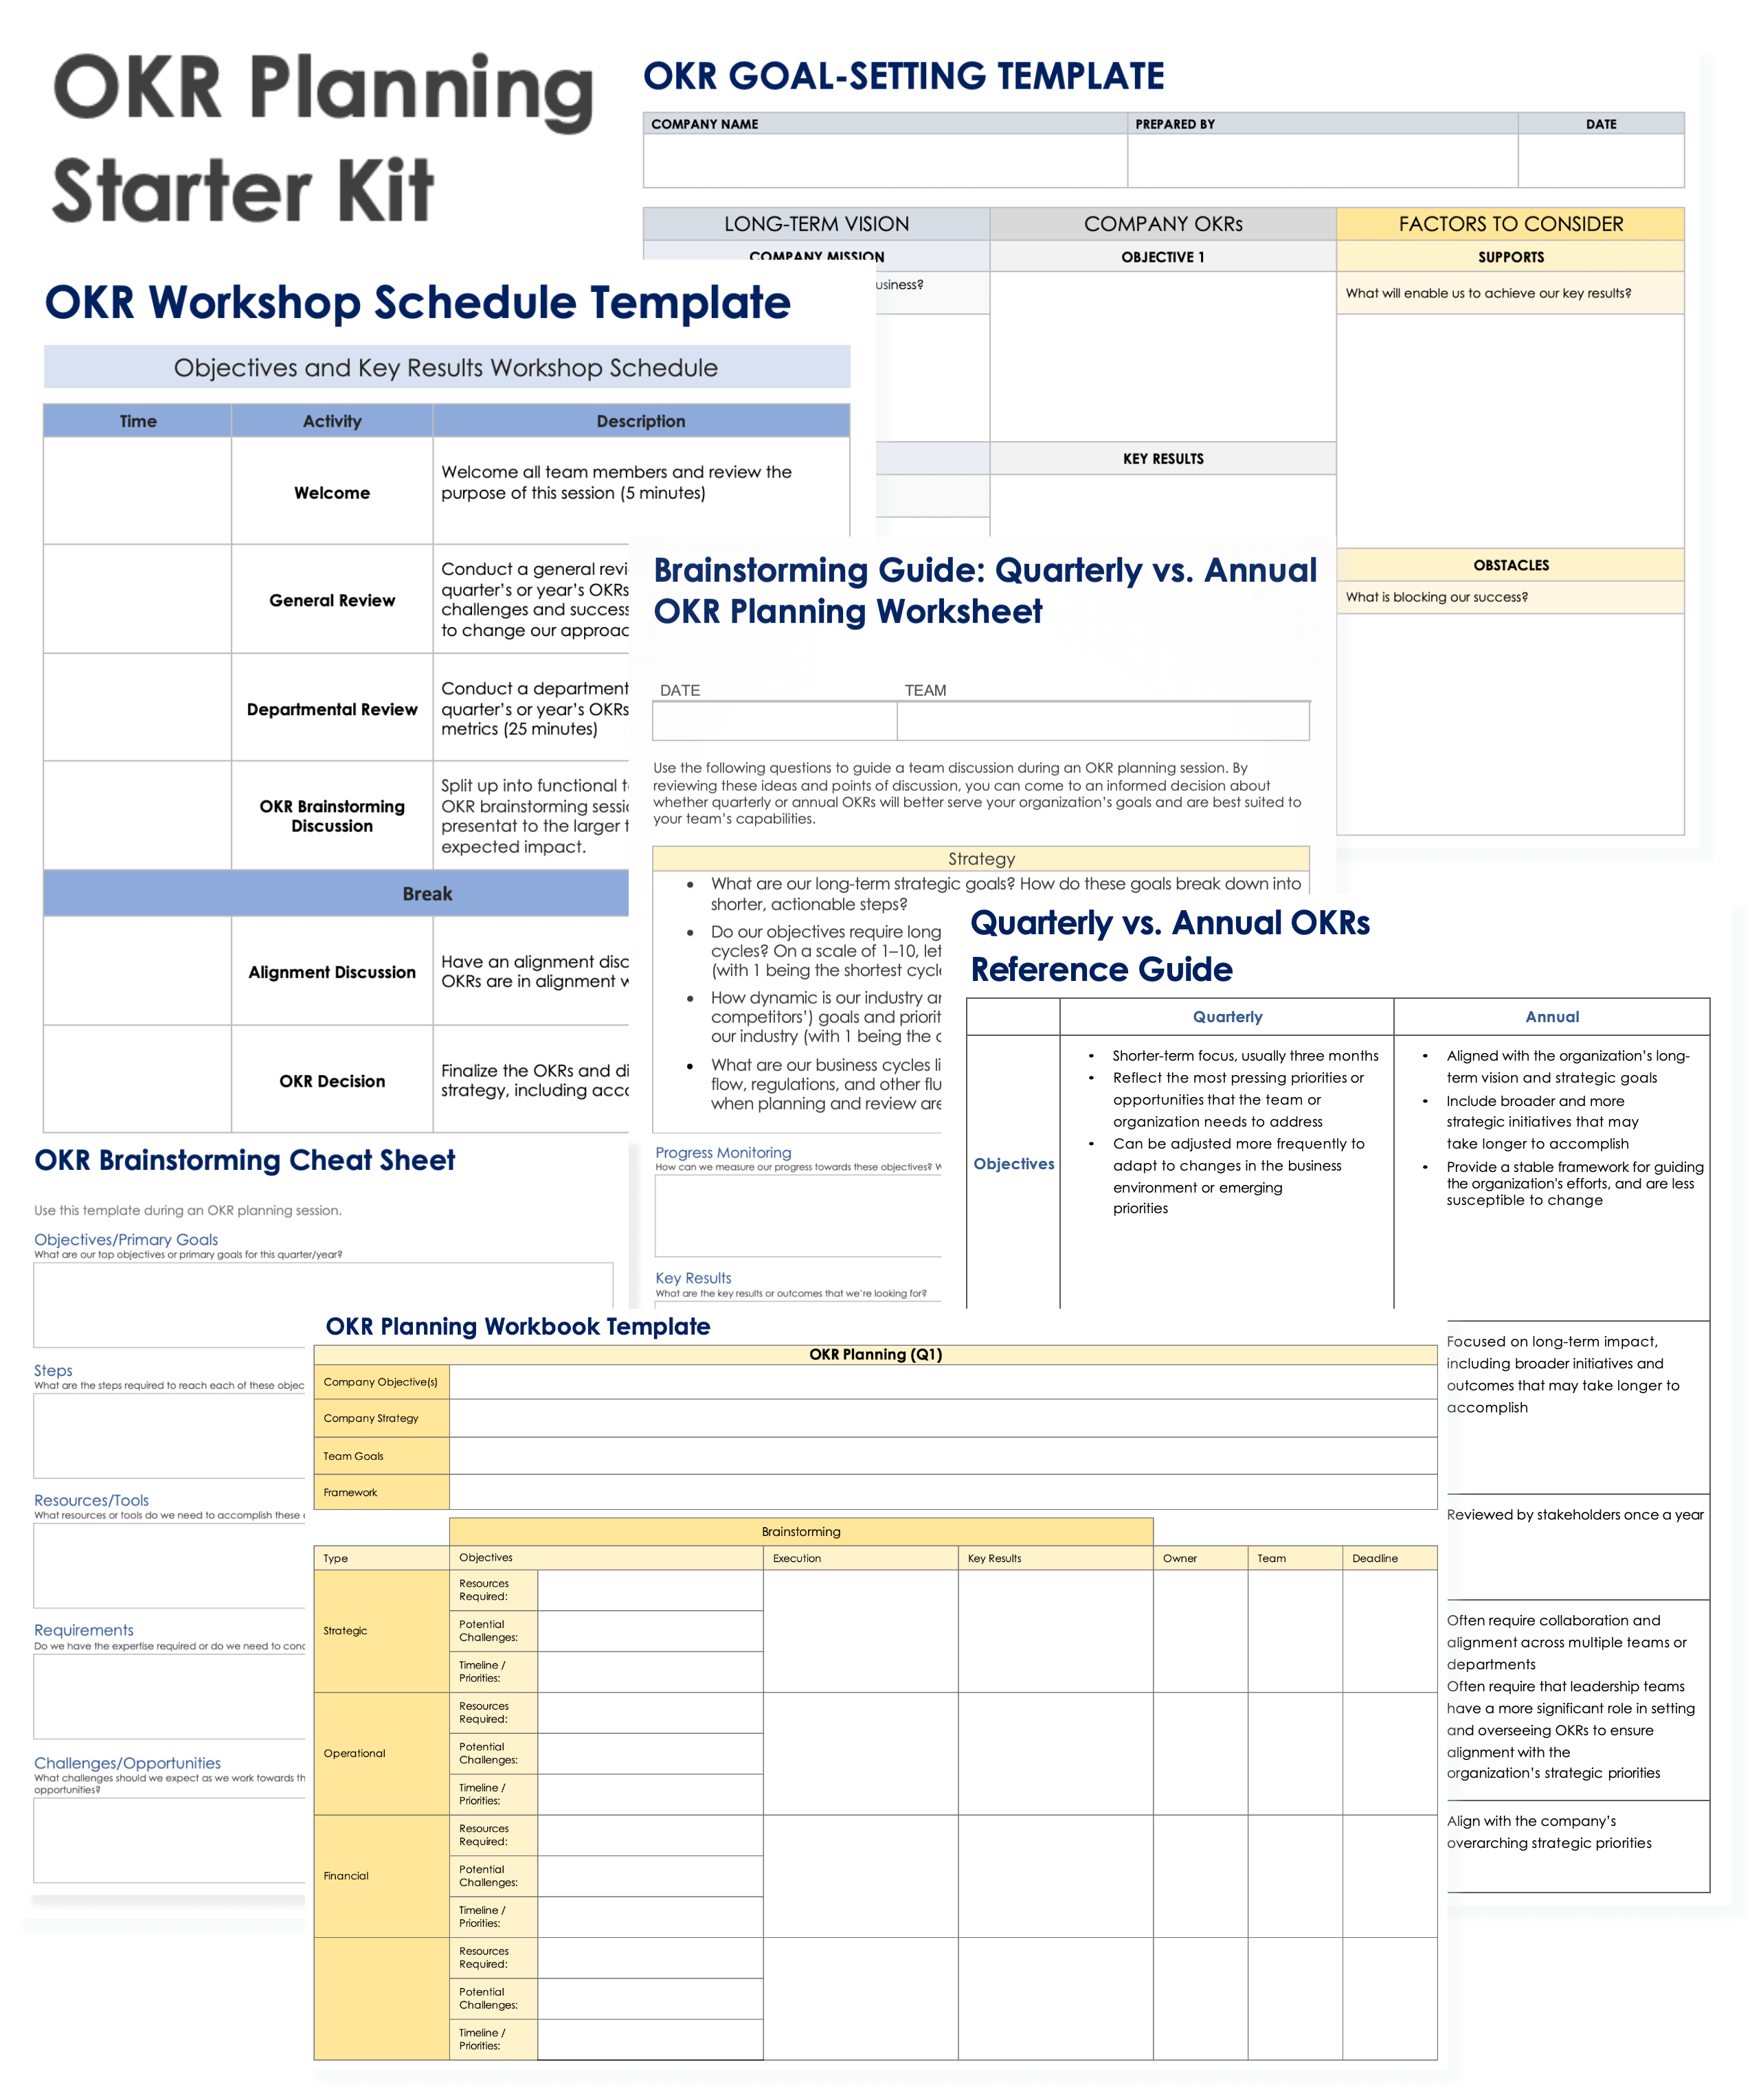 OKR Planning Starter Kit